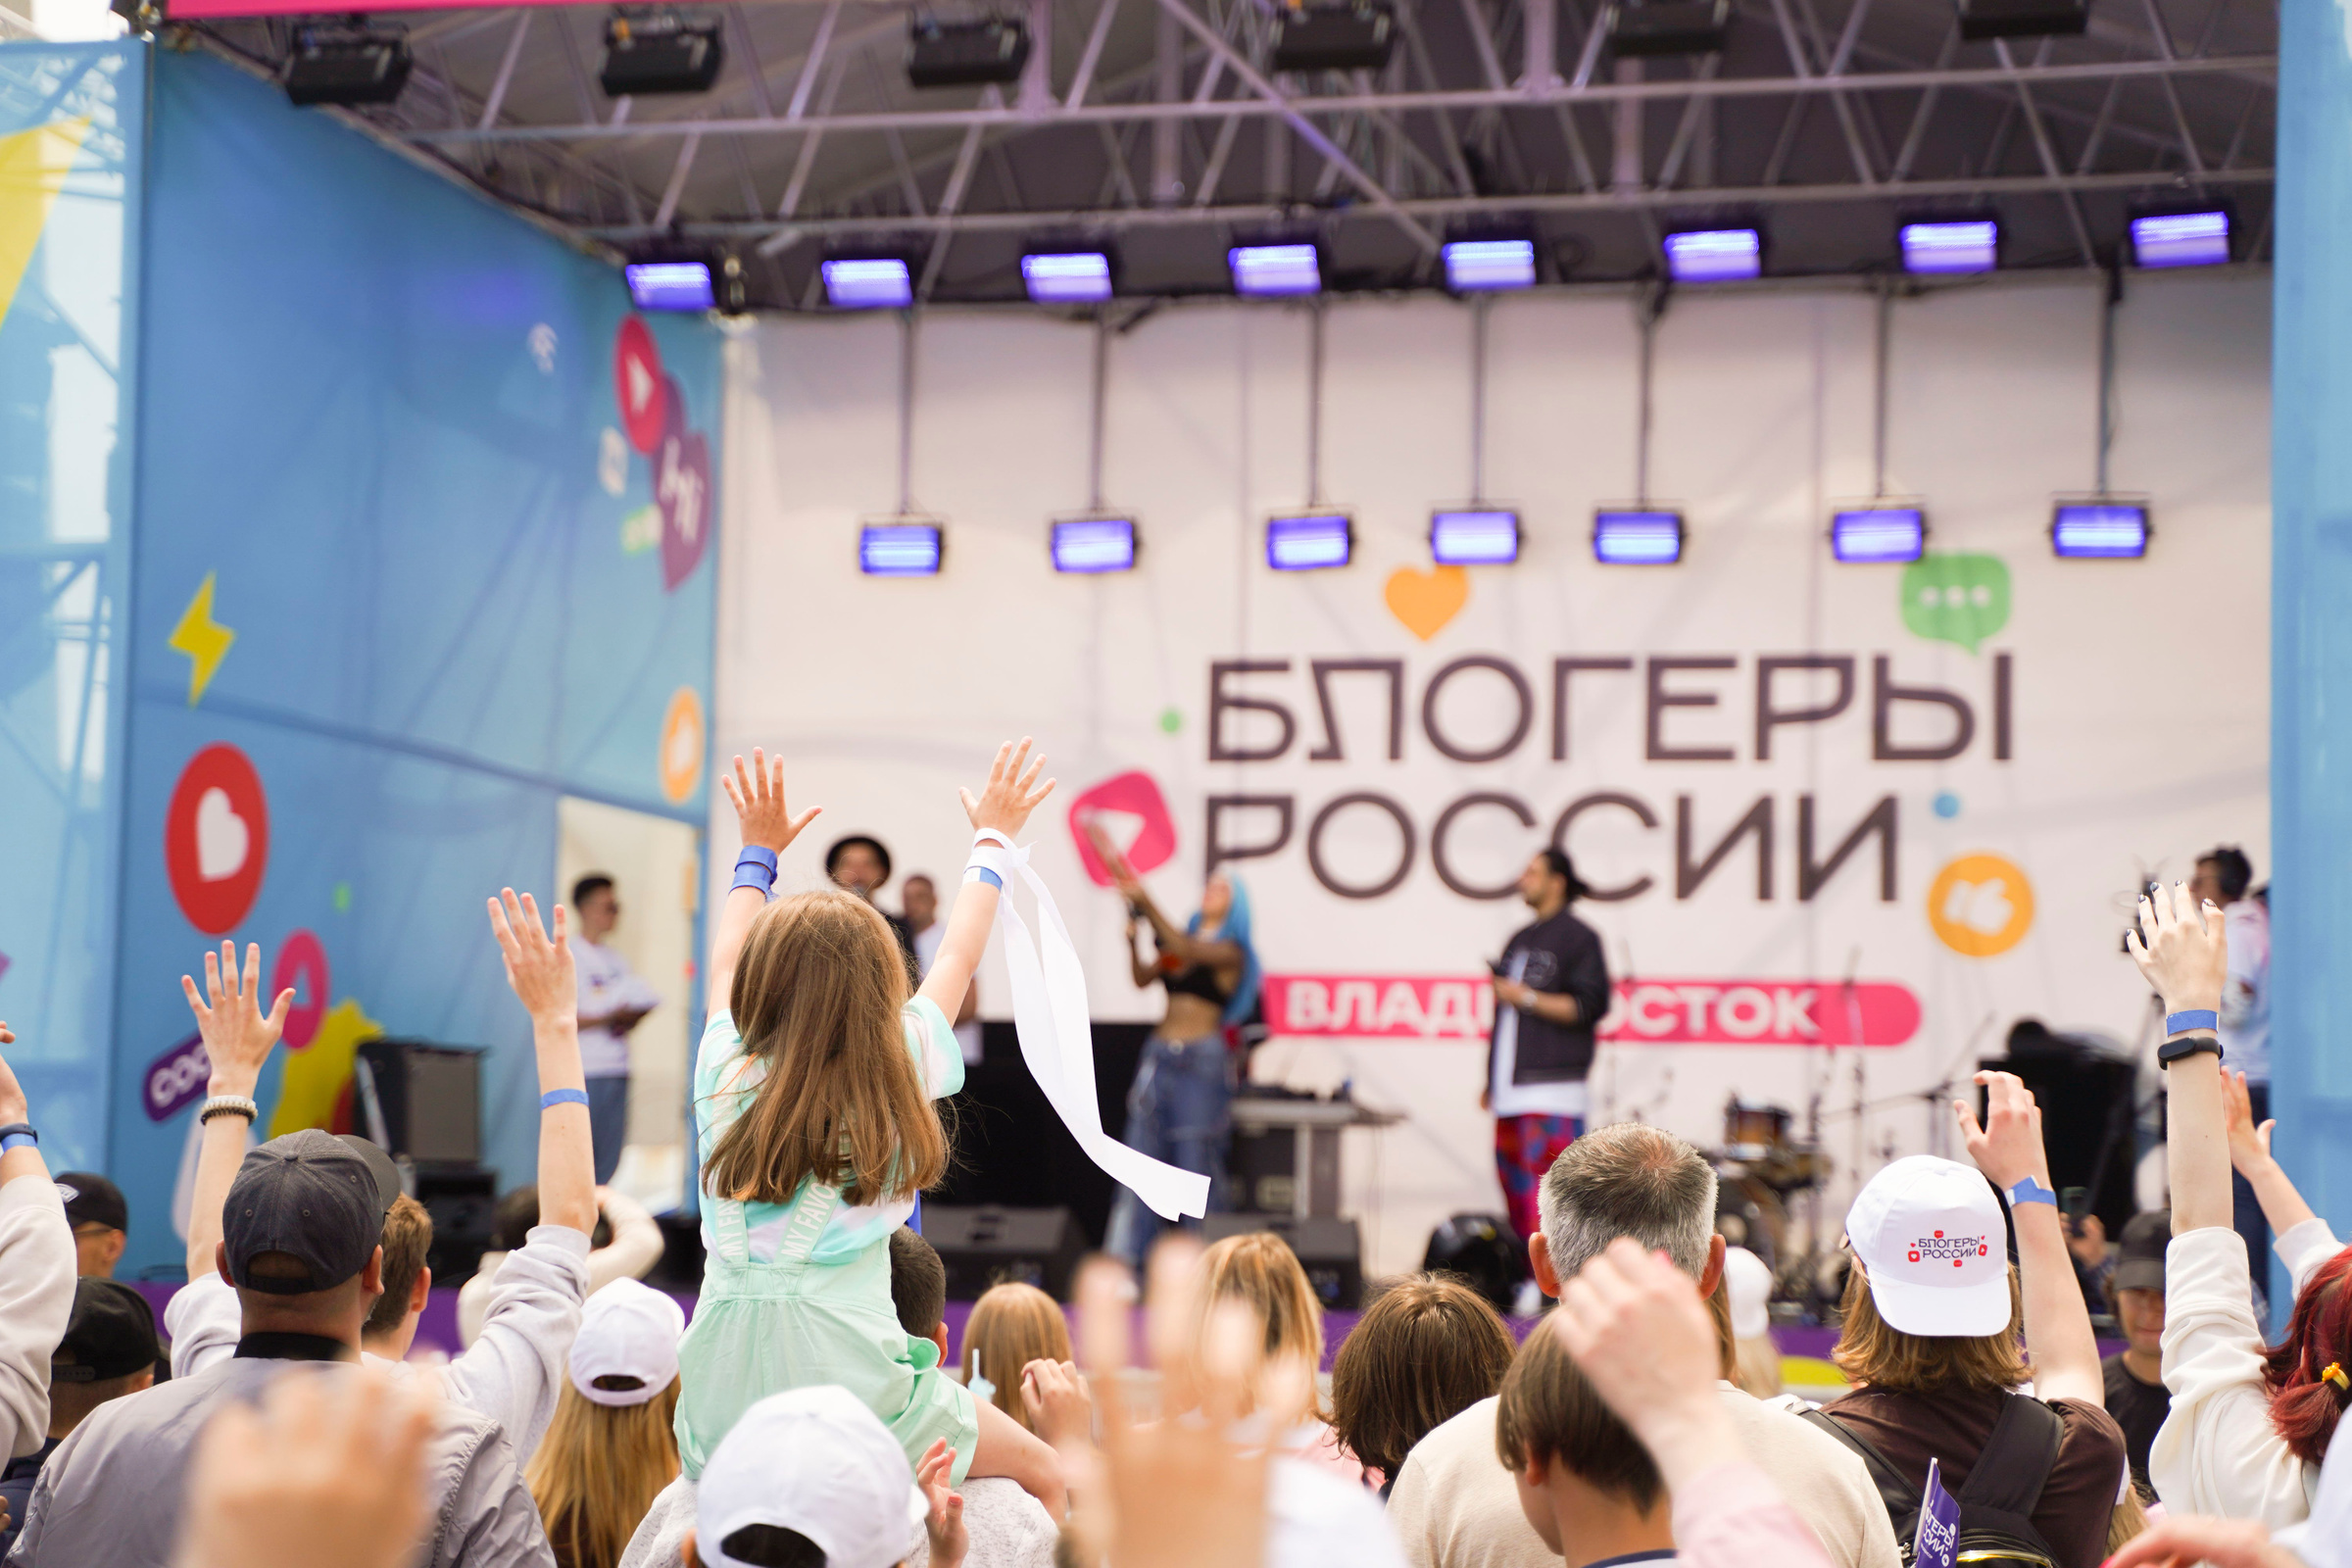 Фестиваль "Блогеры России" во Владивостоке. Фото предоставлено Лайфу